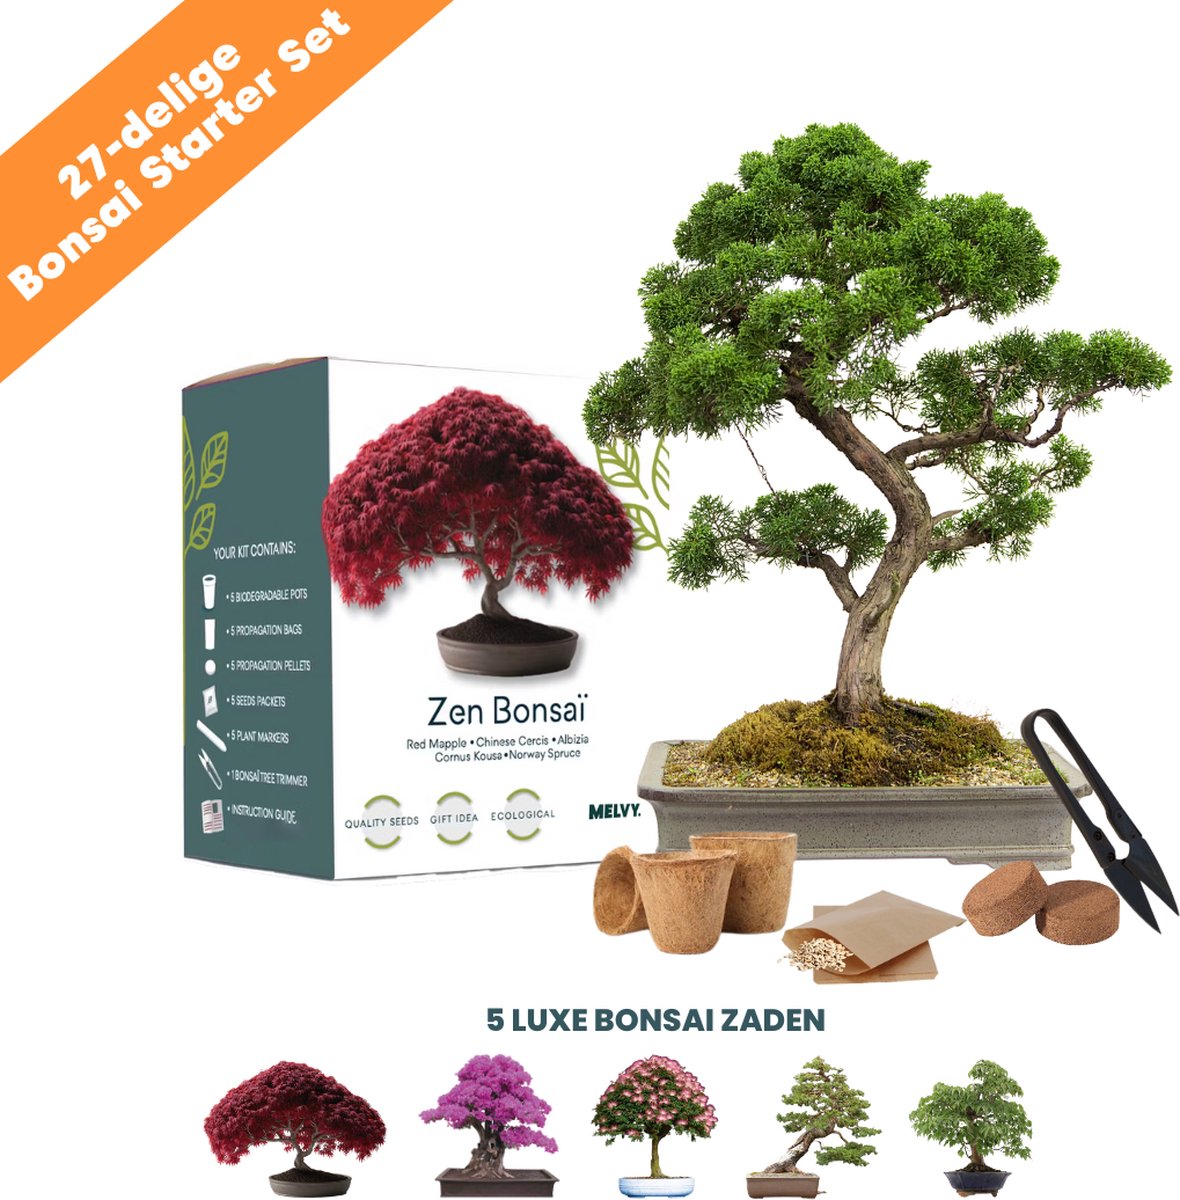 Graines de bonsaï - Kit de démarrage Bonsaï - Cultivez vos eigen bonsaïs -  4 types de